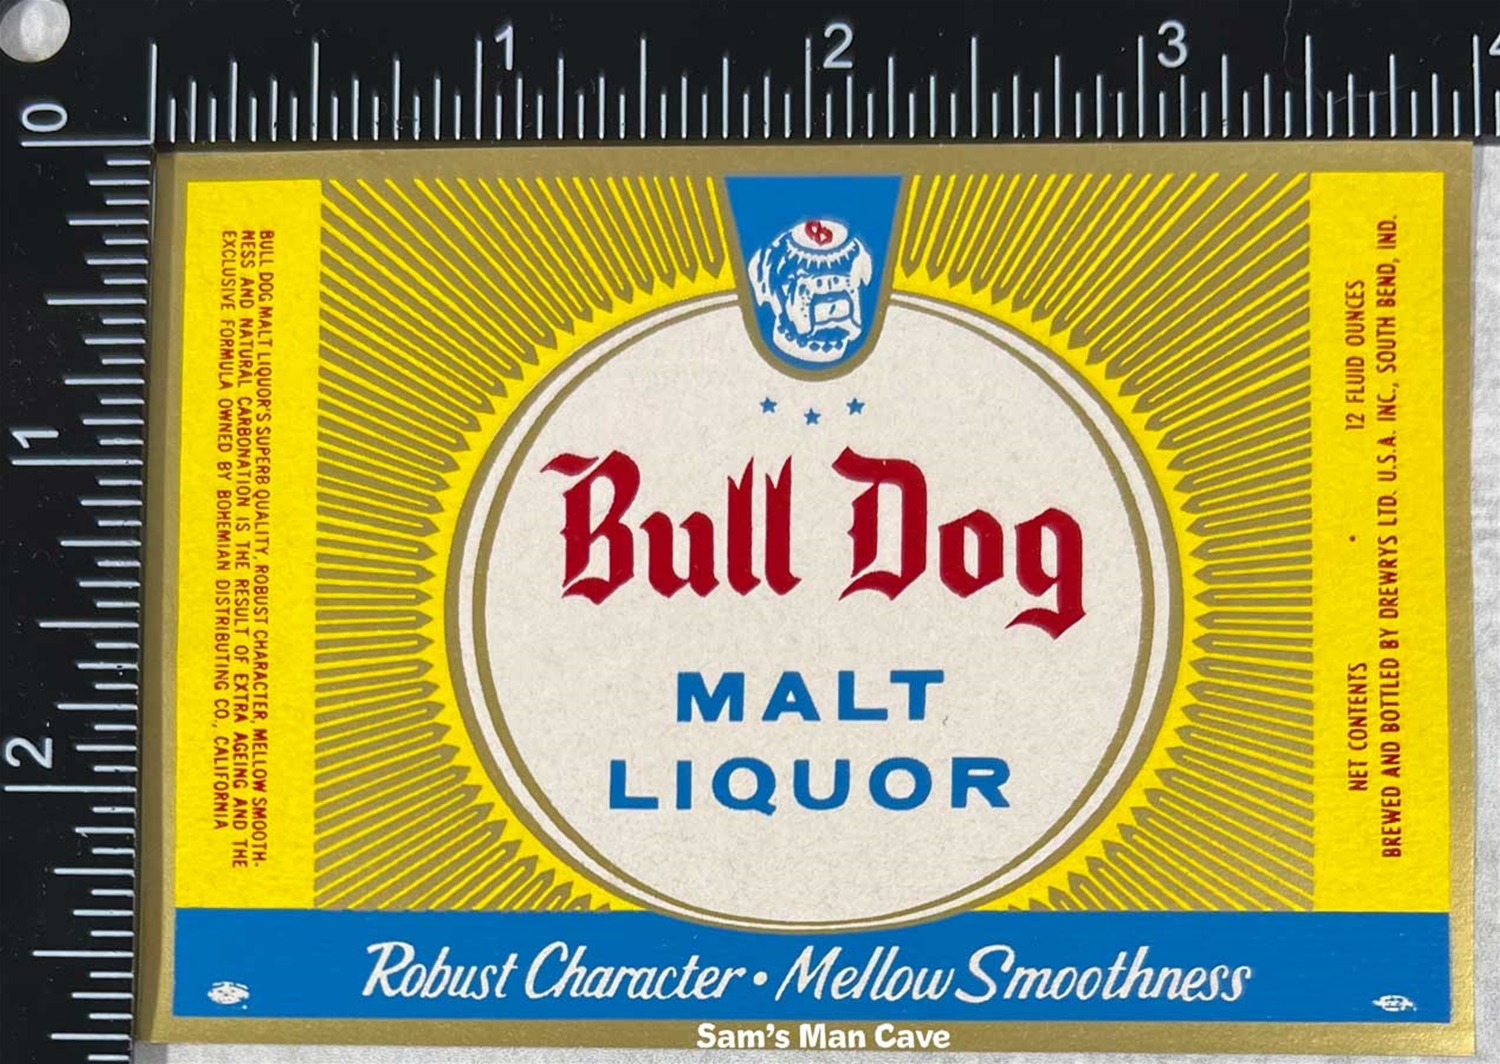 Drewrys Bull Dog Malt Liquor Label